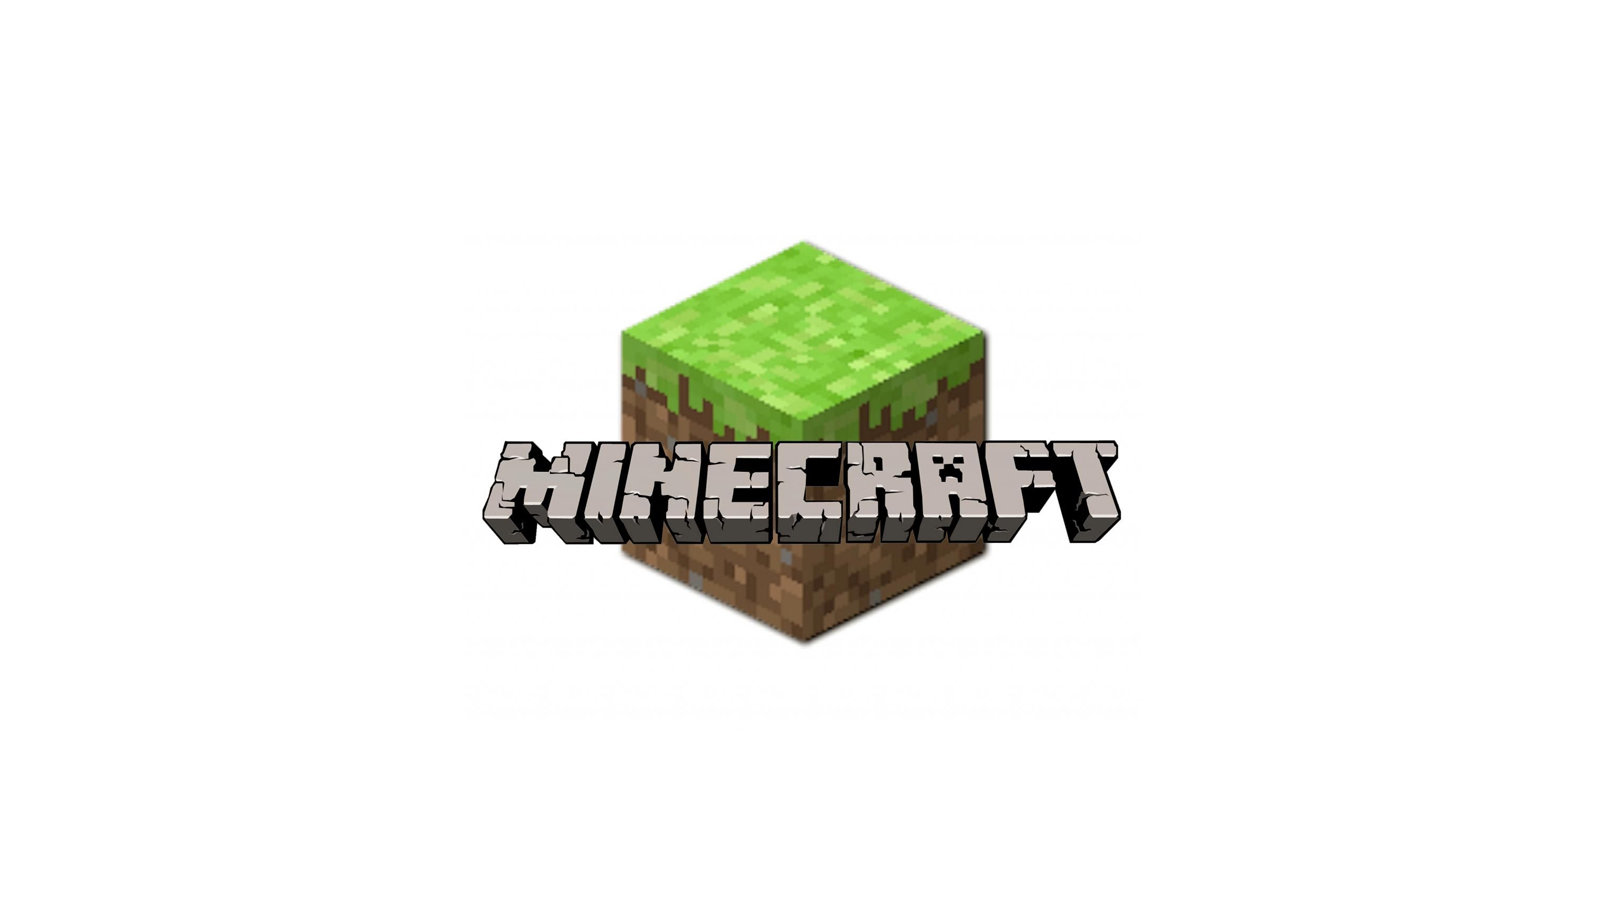 Télécharger Minecraft - Pocket Edition - Jeux - Les Numériques